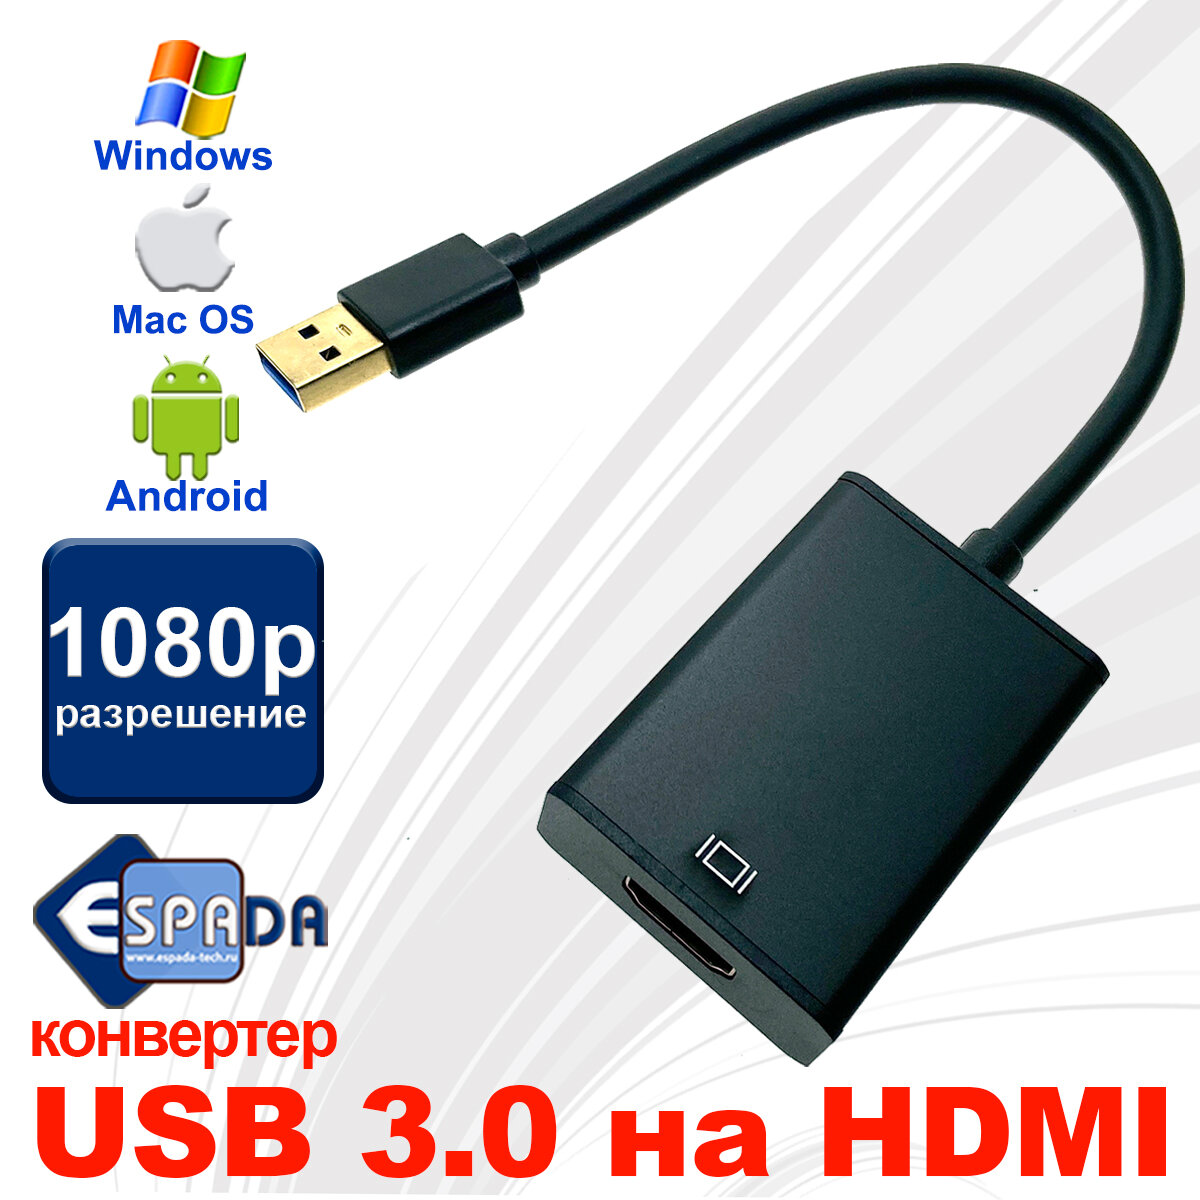 Видео конвертер USB 3.0 to HDMI EU3HDMI Espada